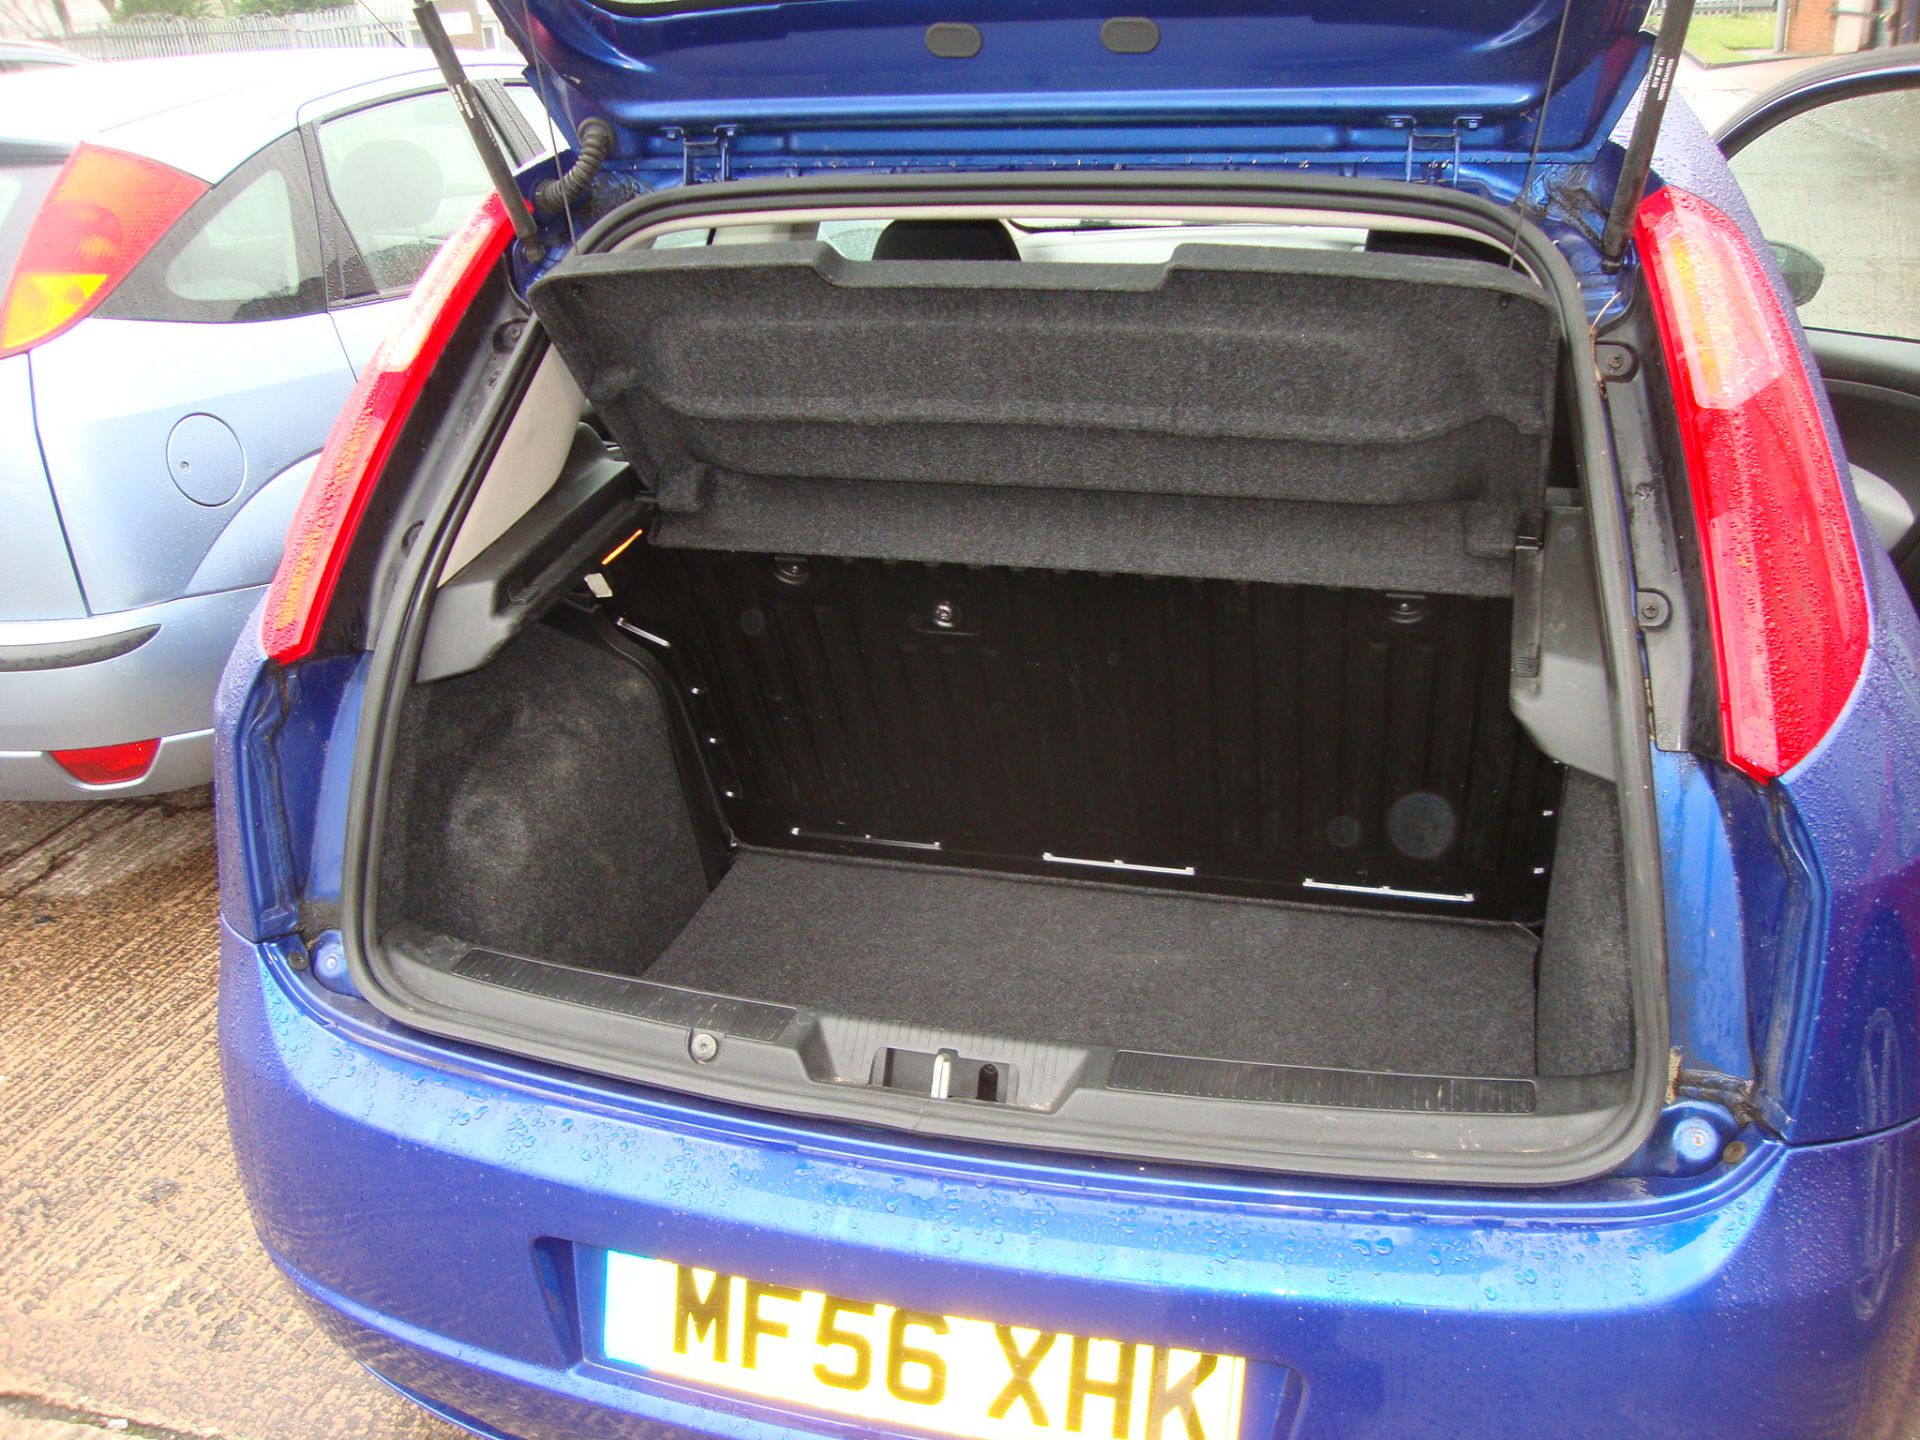 MF56 XHK Fiat Punto Active 3-door hatchback - Image 11 of 13